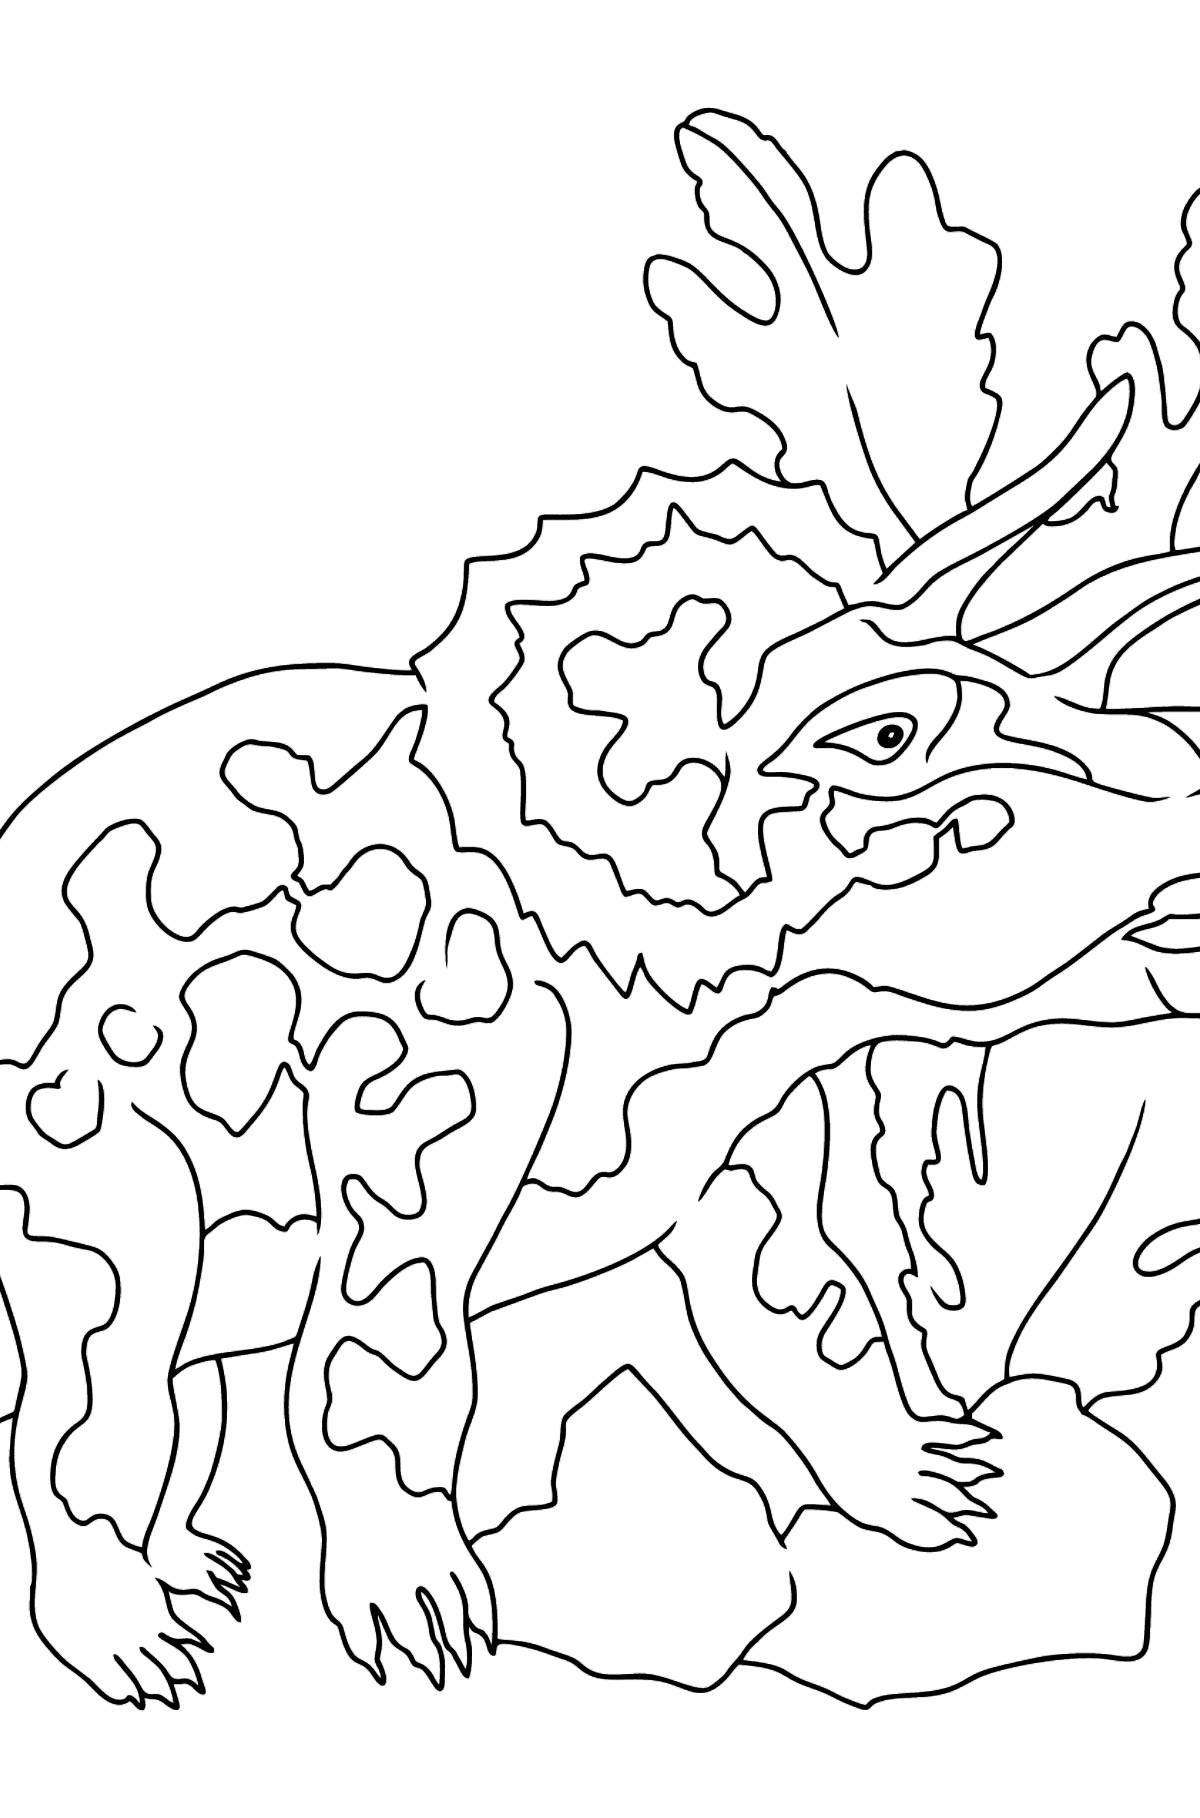 Tegning til fargelegging triceratops (enkelt) - Tegninger til fargelegging for barn